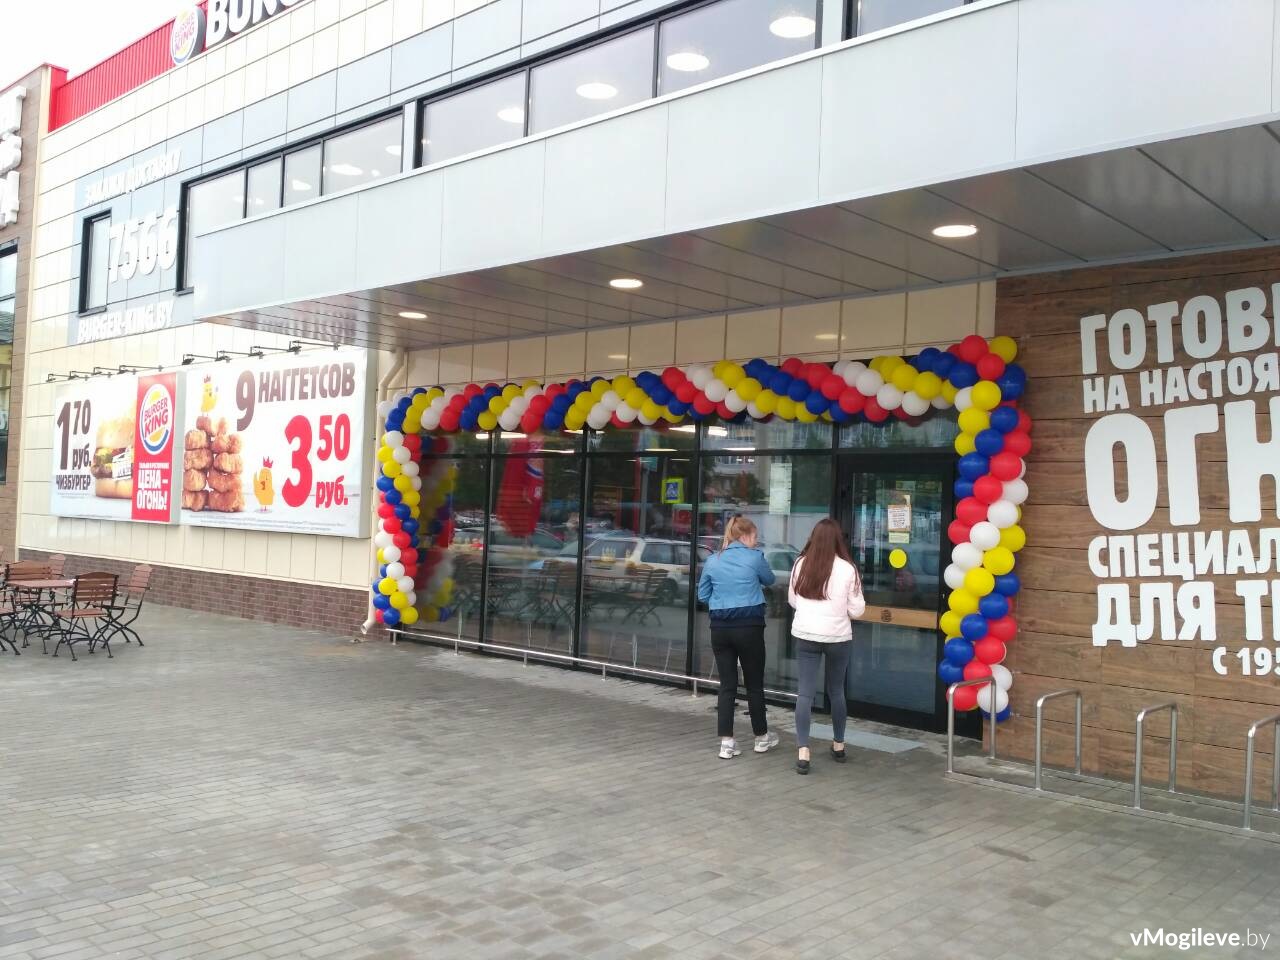 В Могилёве открылся первый Burger King